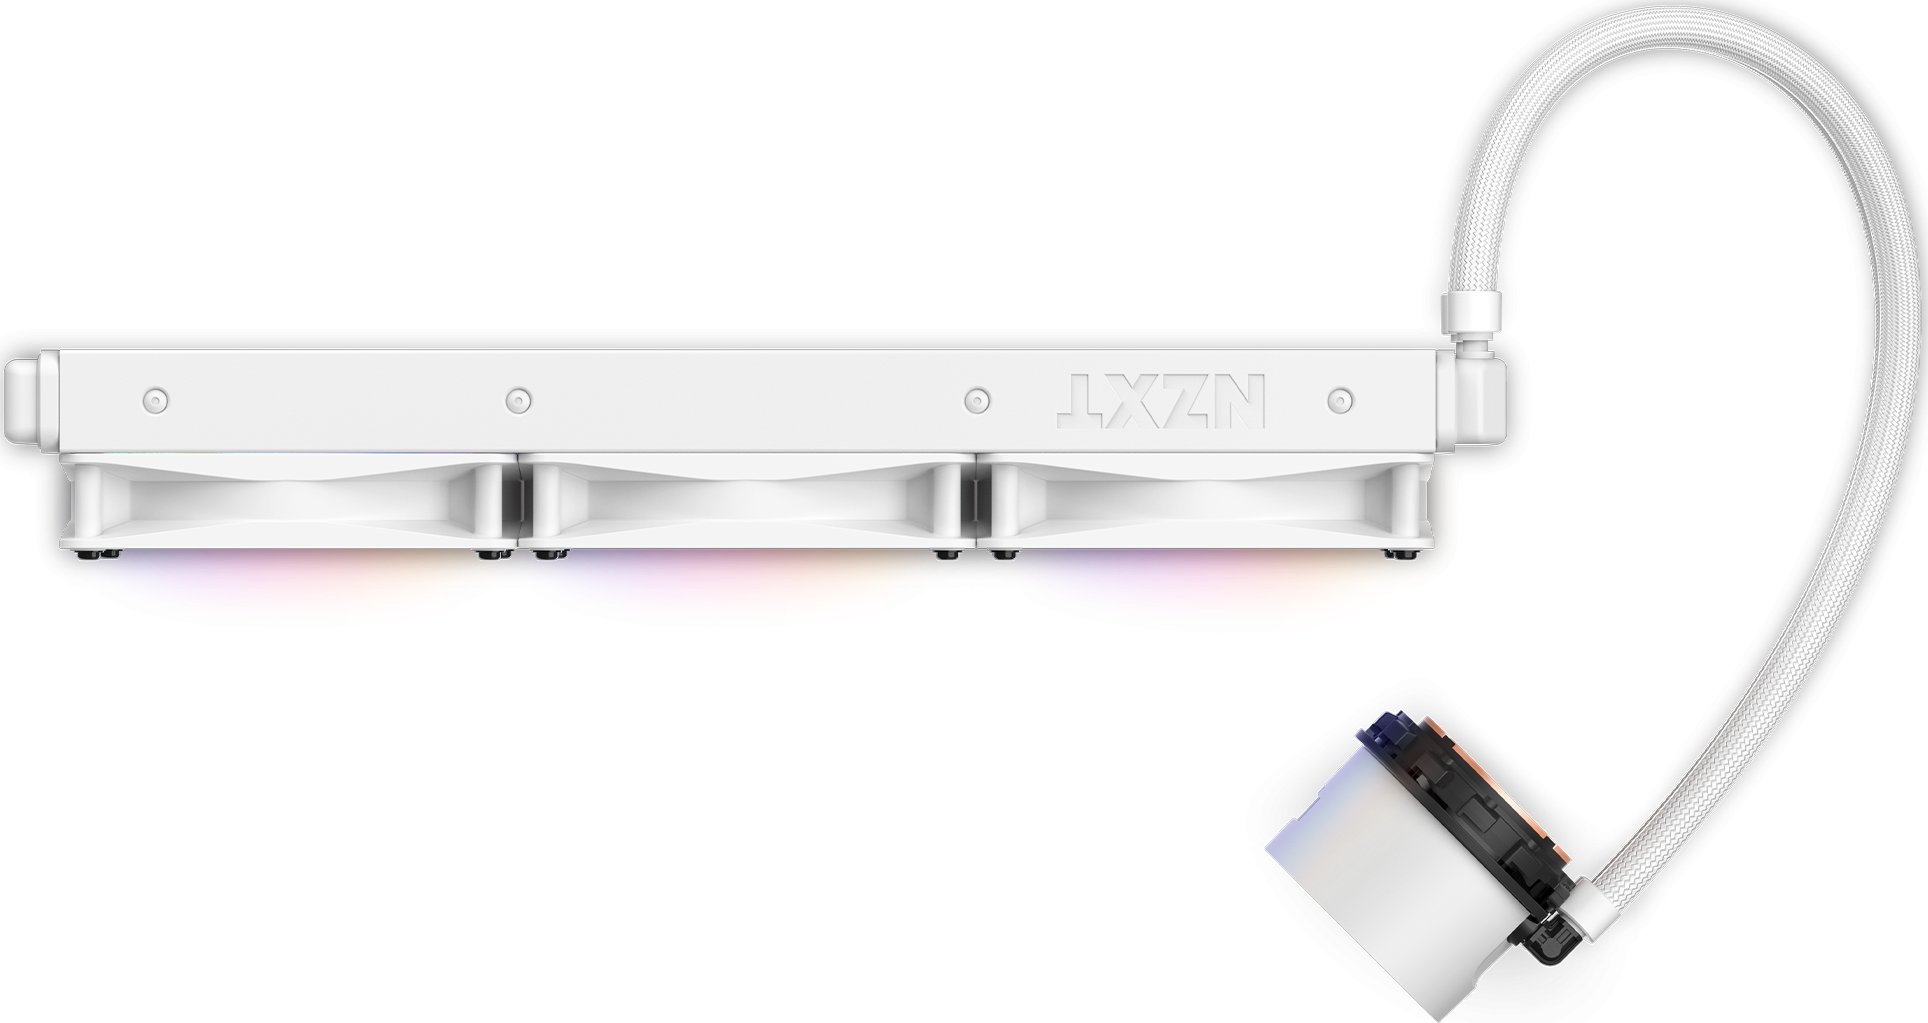 Coolere Procesor - Răcire cu apă Nzxt Kraken 360 RGB (RL-KR360-W1)